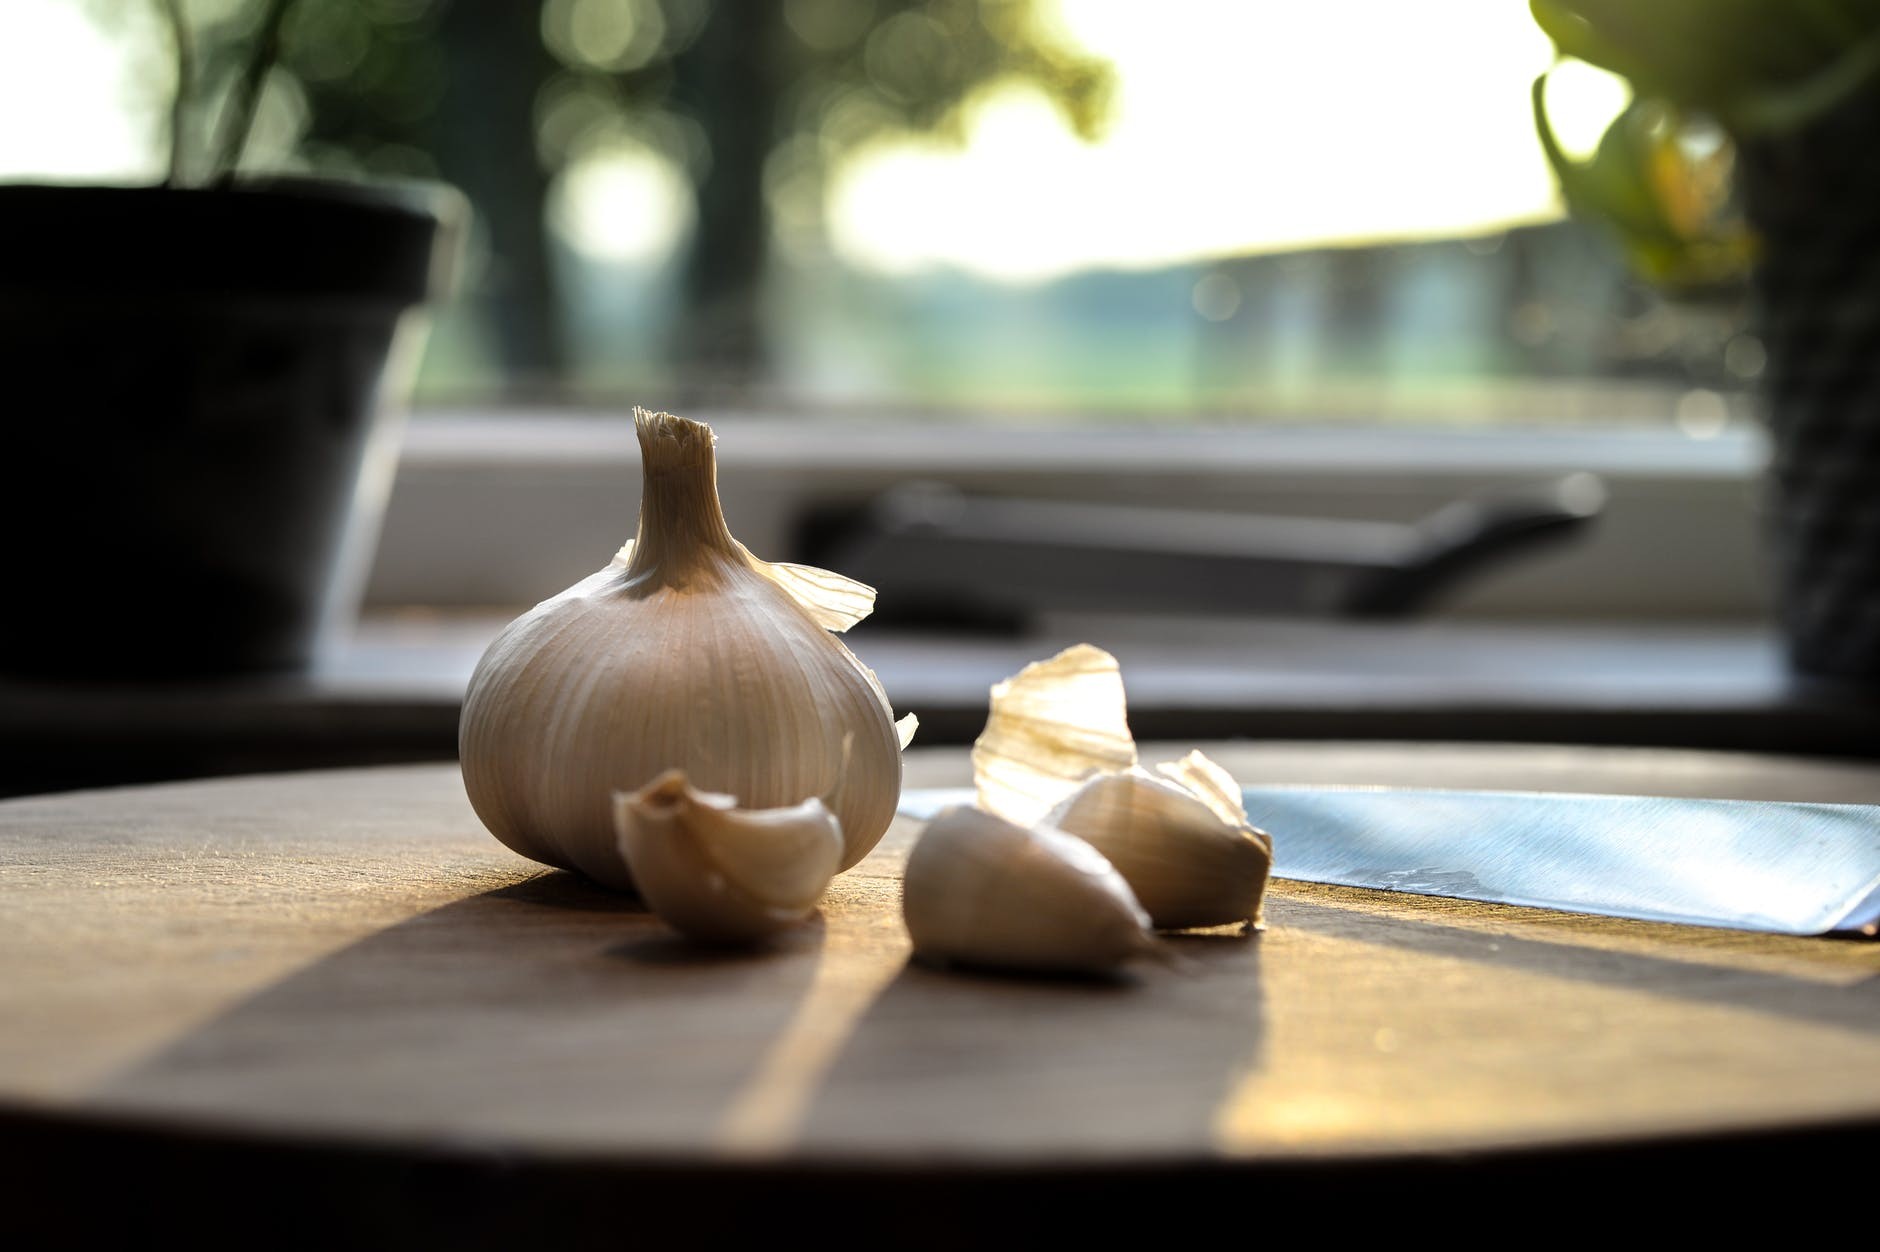 Vedere e sbucciare l aglio in sogno:significato e simbolismo